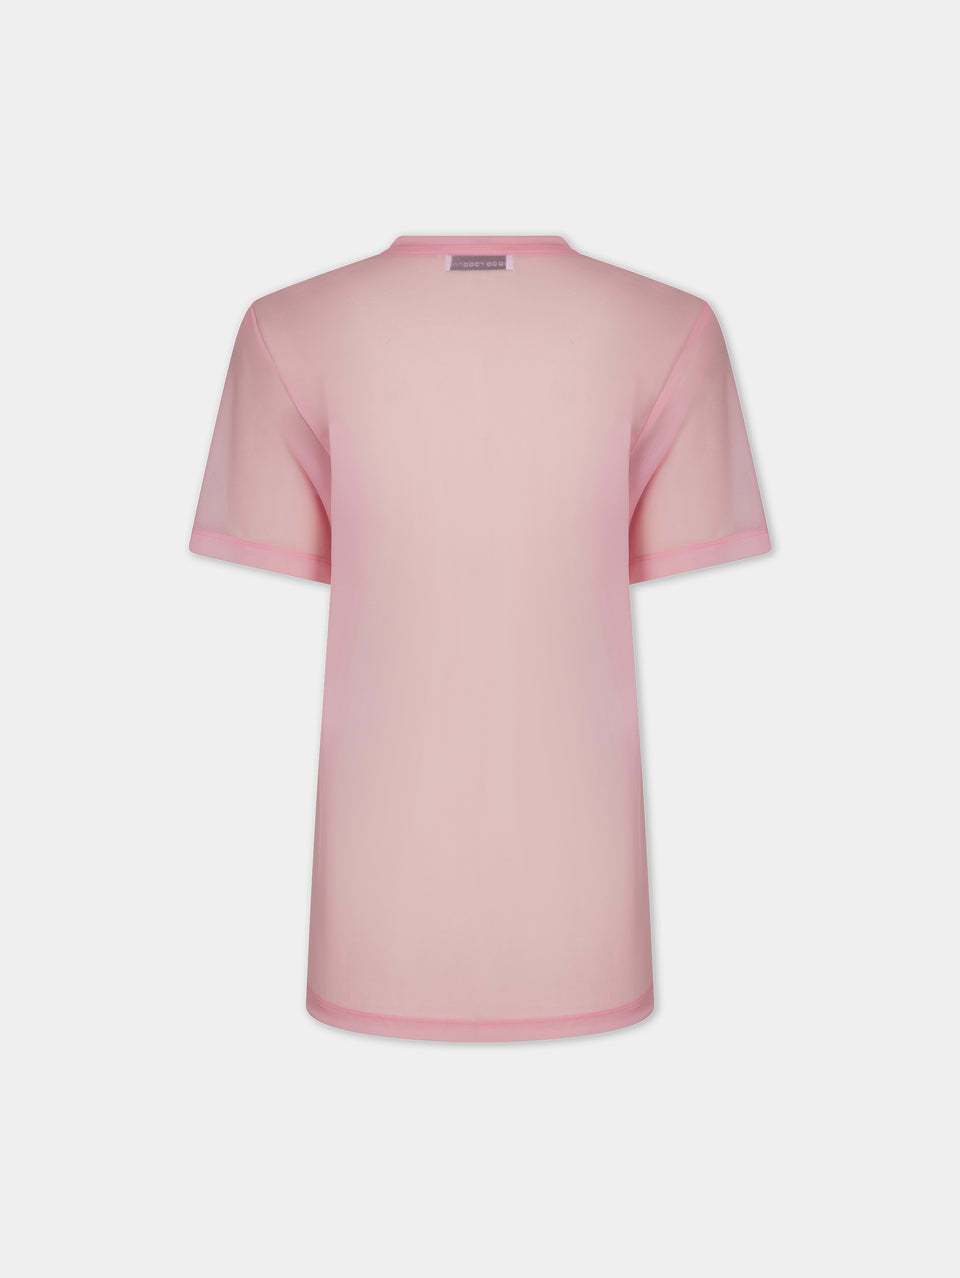 Pink Visconti-inspired T-shirt